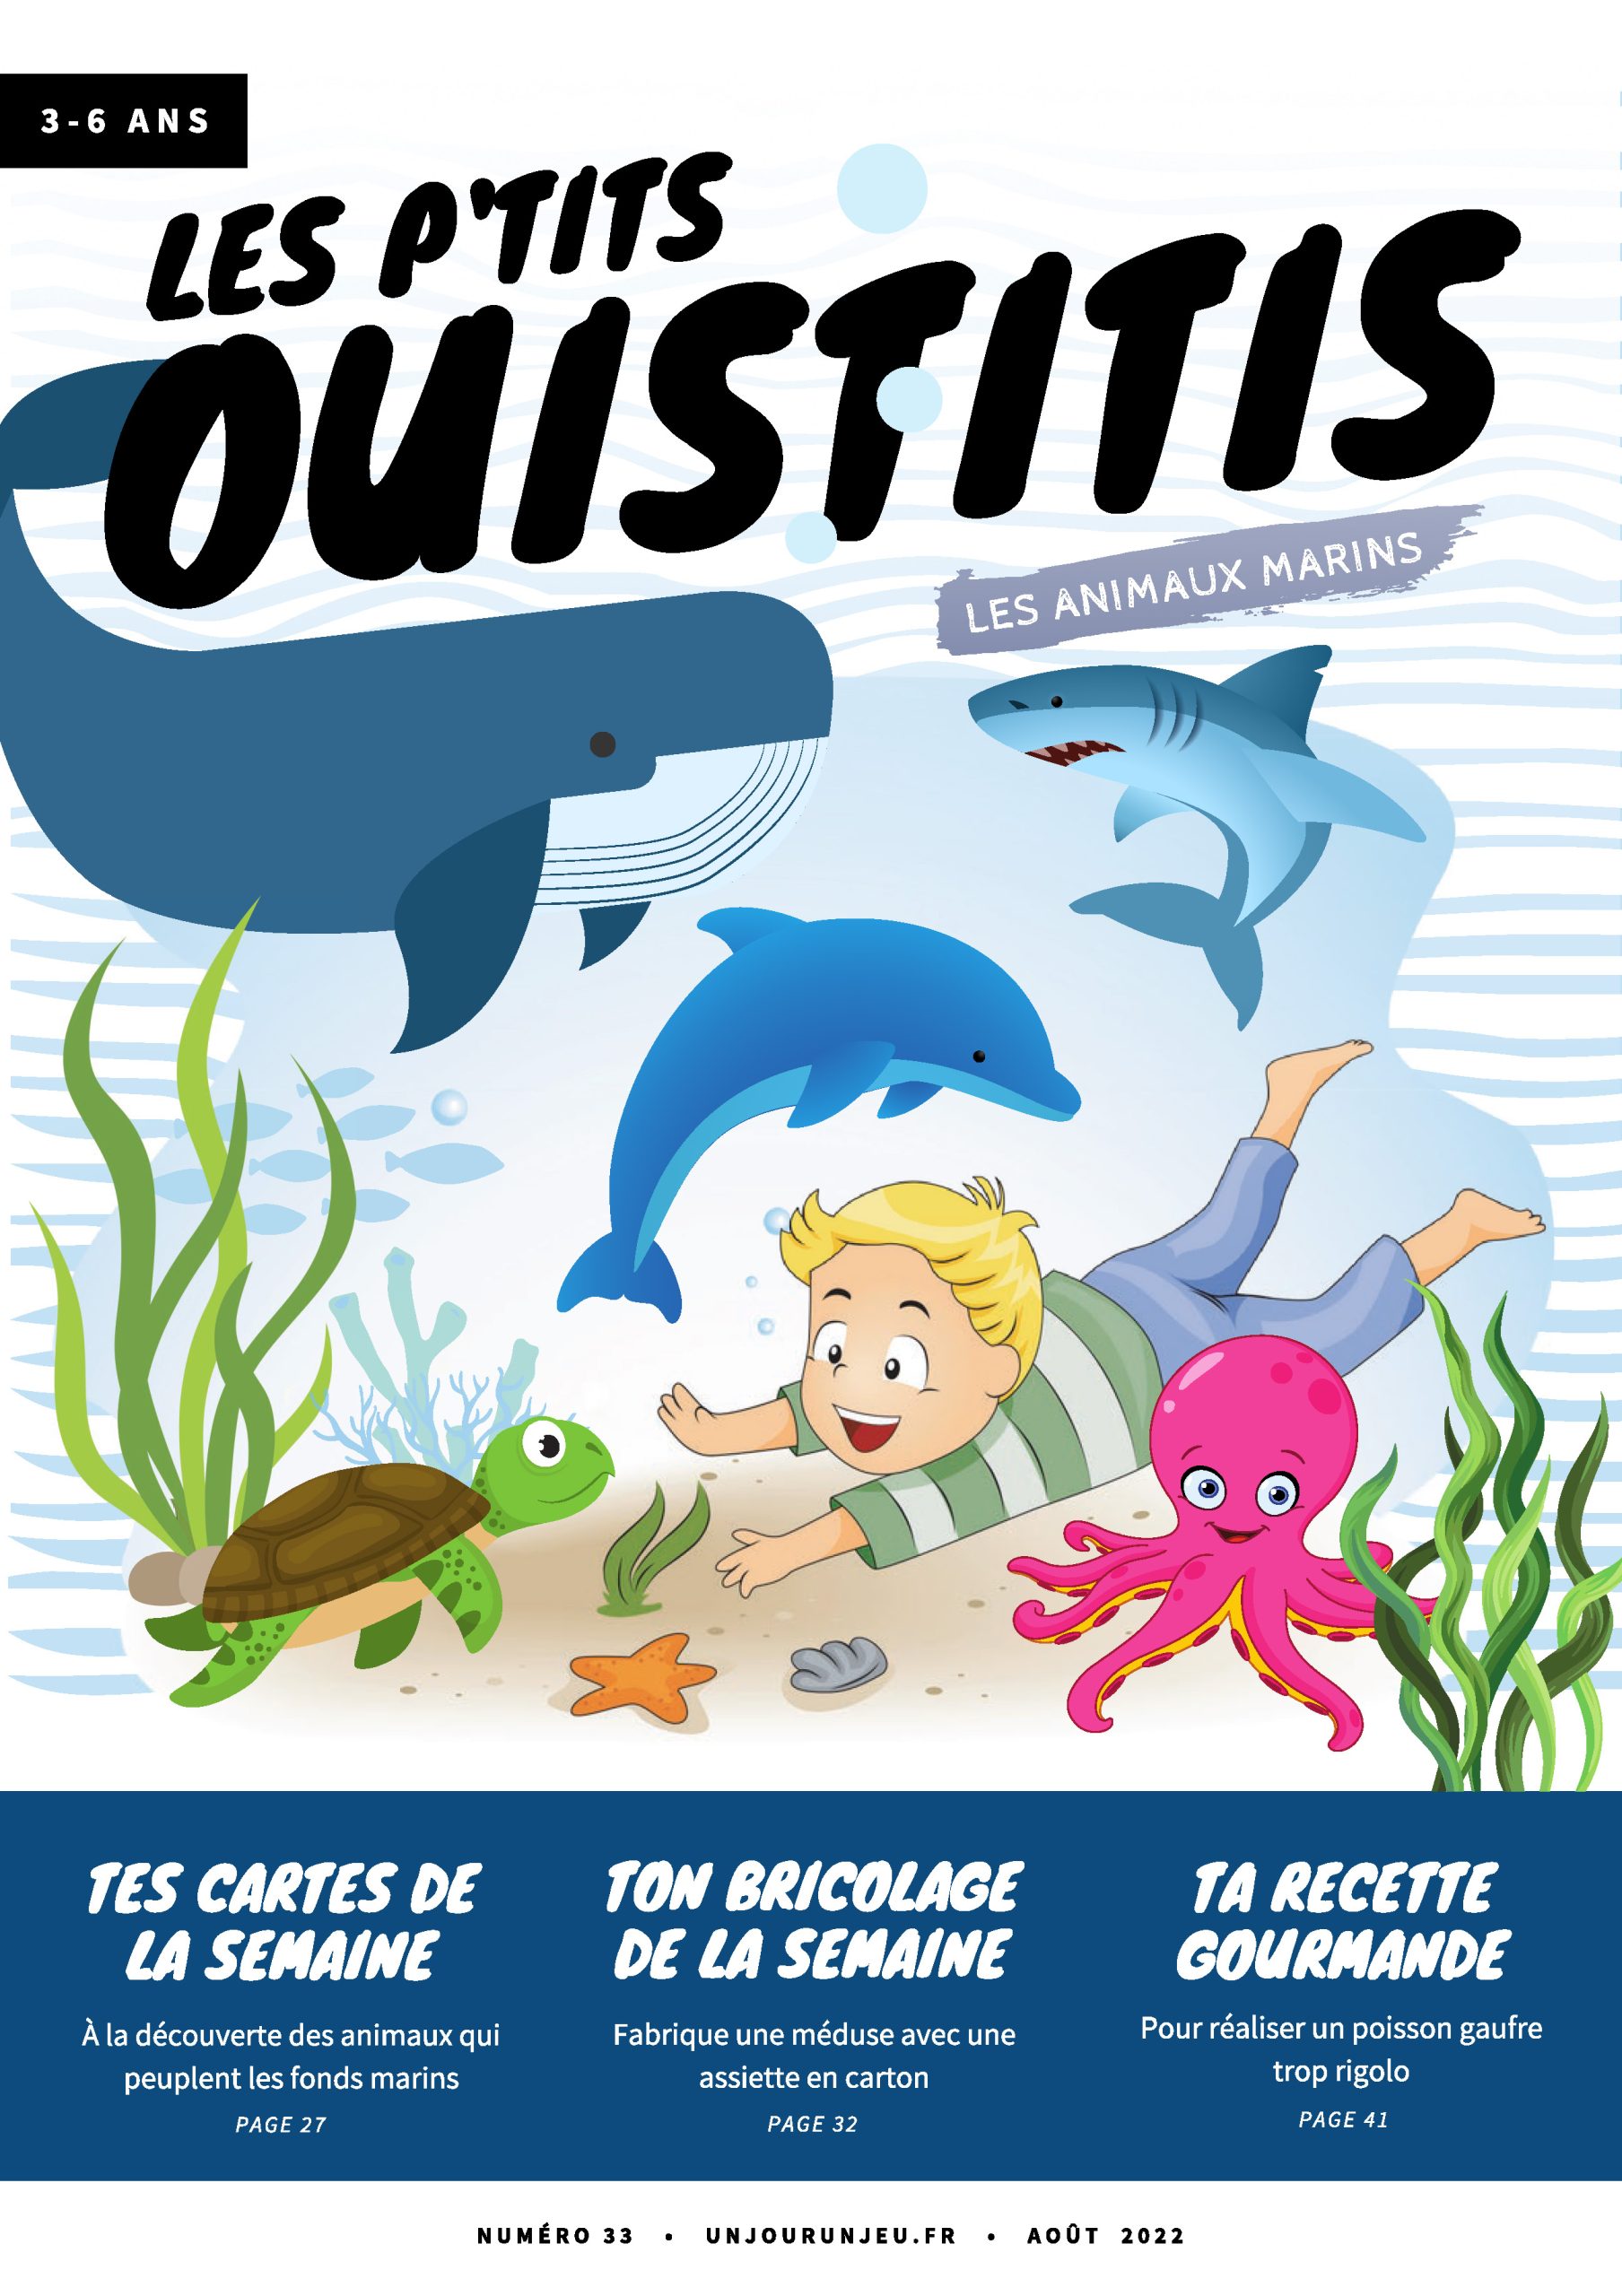 Les P’tits Ouistitis et les animaux marins